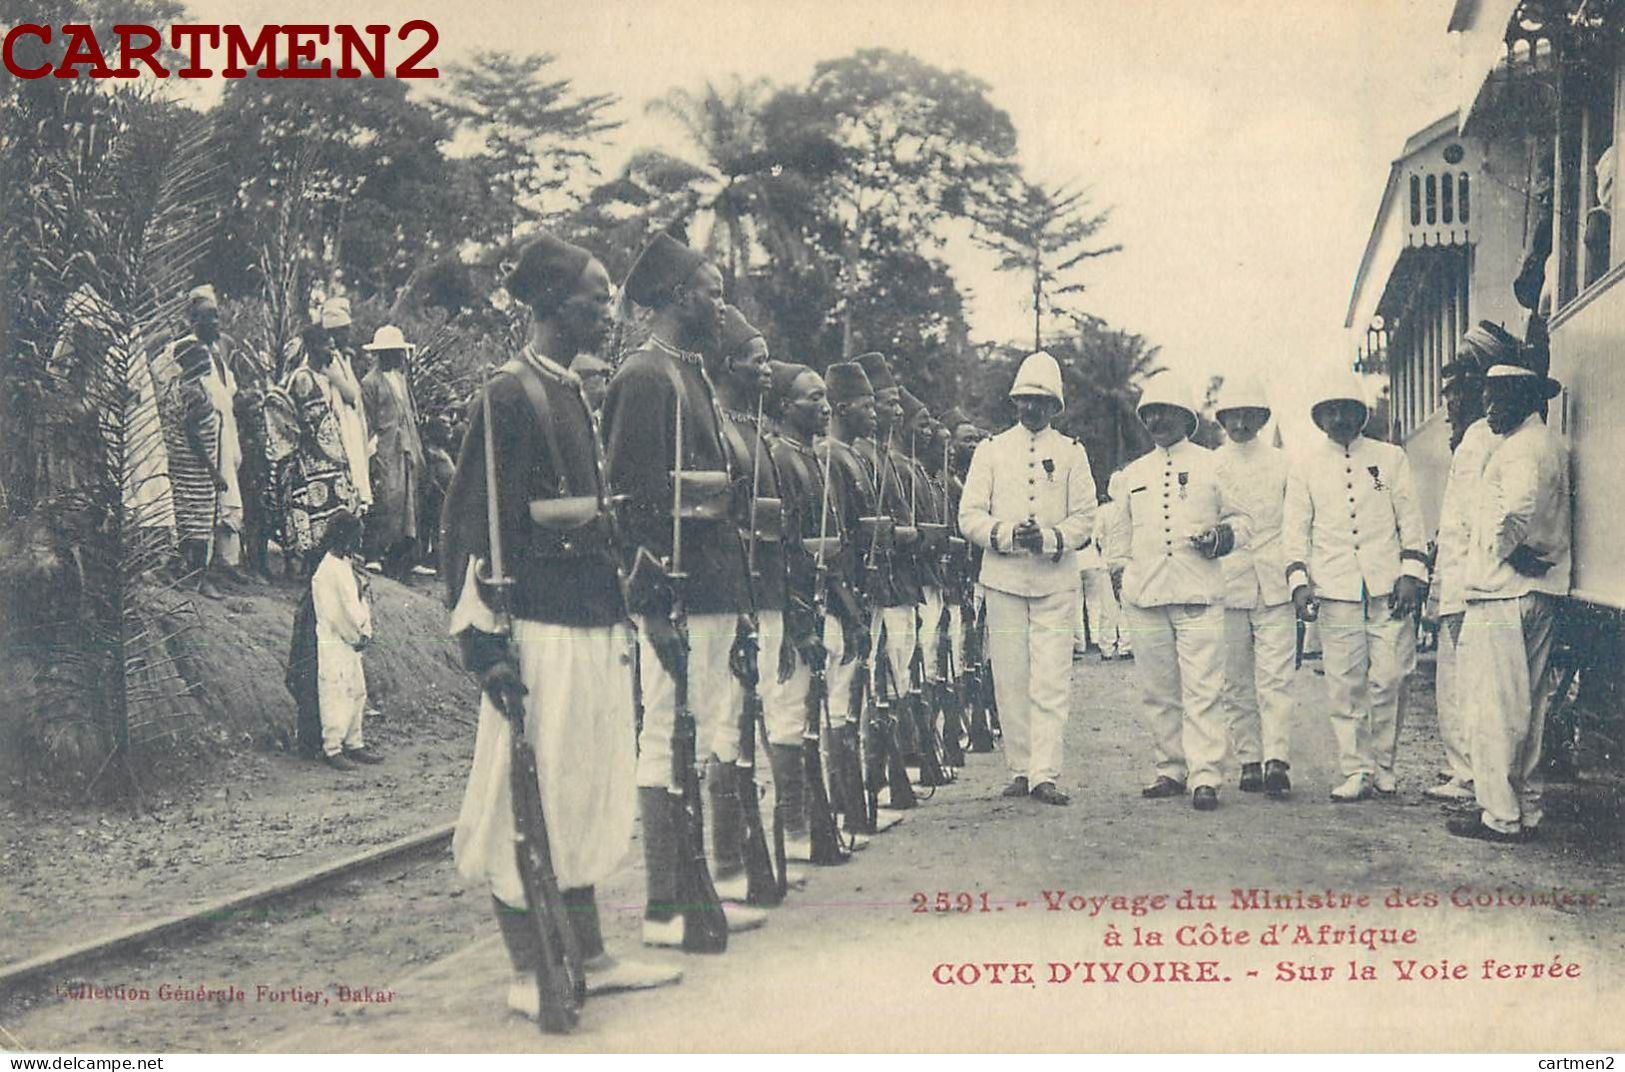 COTE-D'IVOIRE VOYAGE DU MINISTRE DES COLONIES A LA COTE D'AFRIQUE SUR LA VOIE FERREE GARE STATION ABIDJEAN POLITIQUE - Côte-d'Ivoire